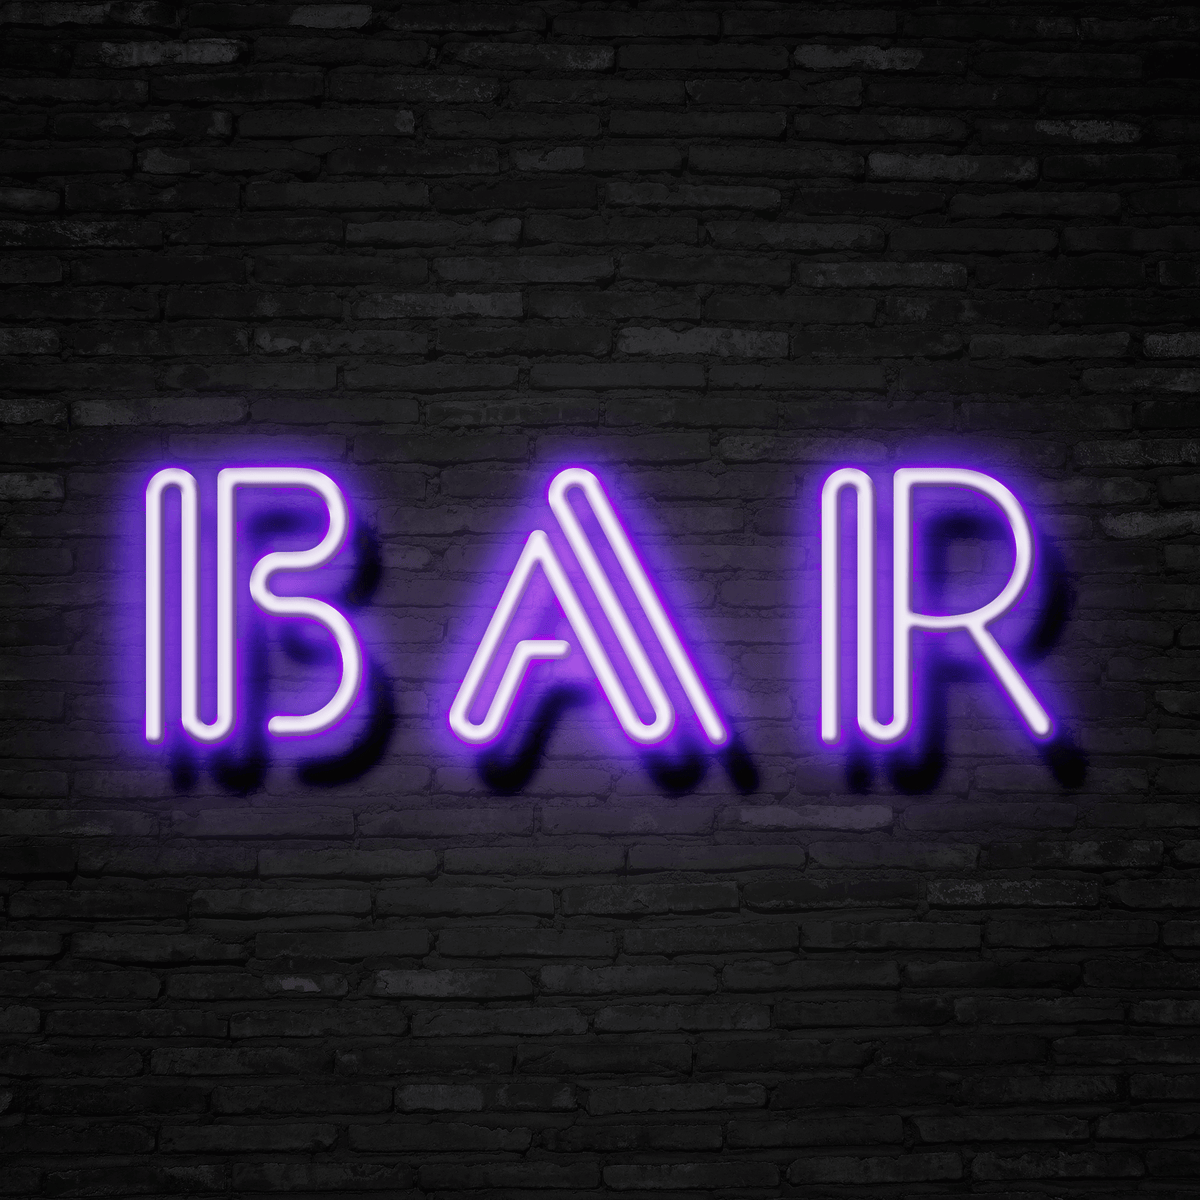 BAR - Neon Sign